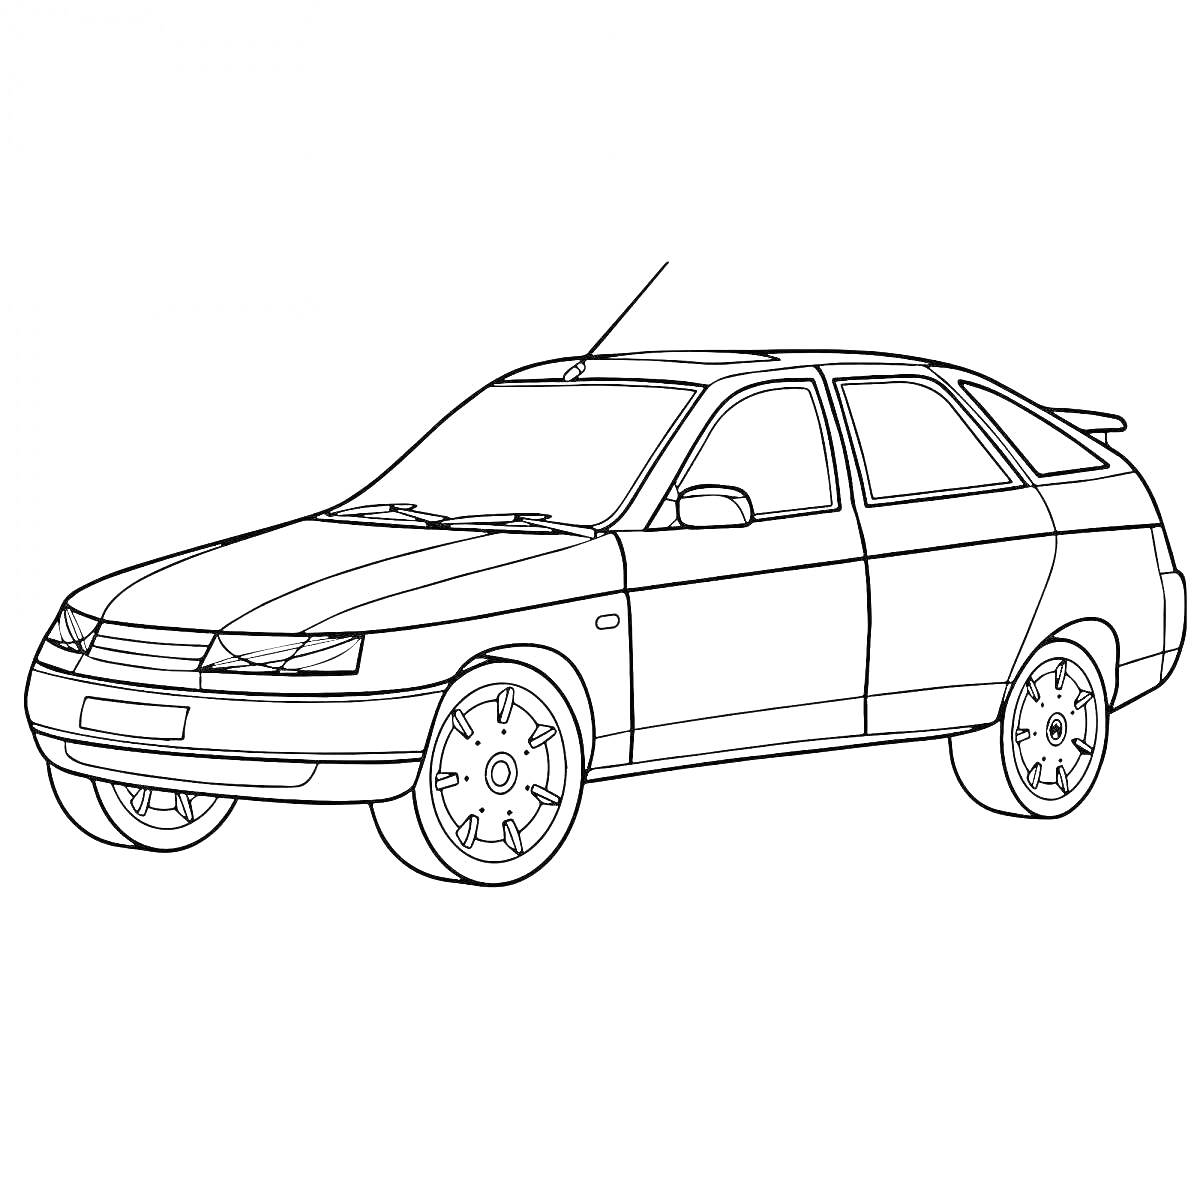 Раскраска Автомобиль Лада Гранта в профиль с видимыми передними и задними колесами, зеркалами заднего вида, антенна на крыше